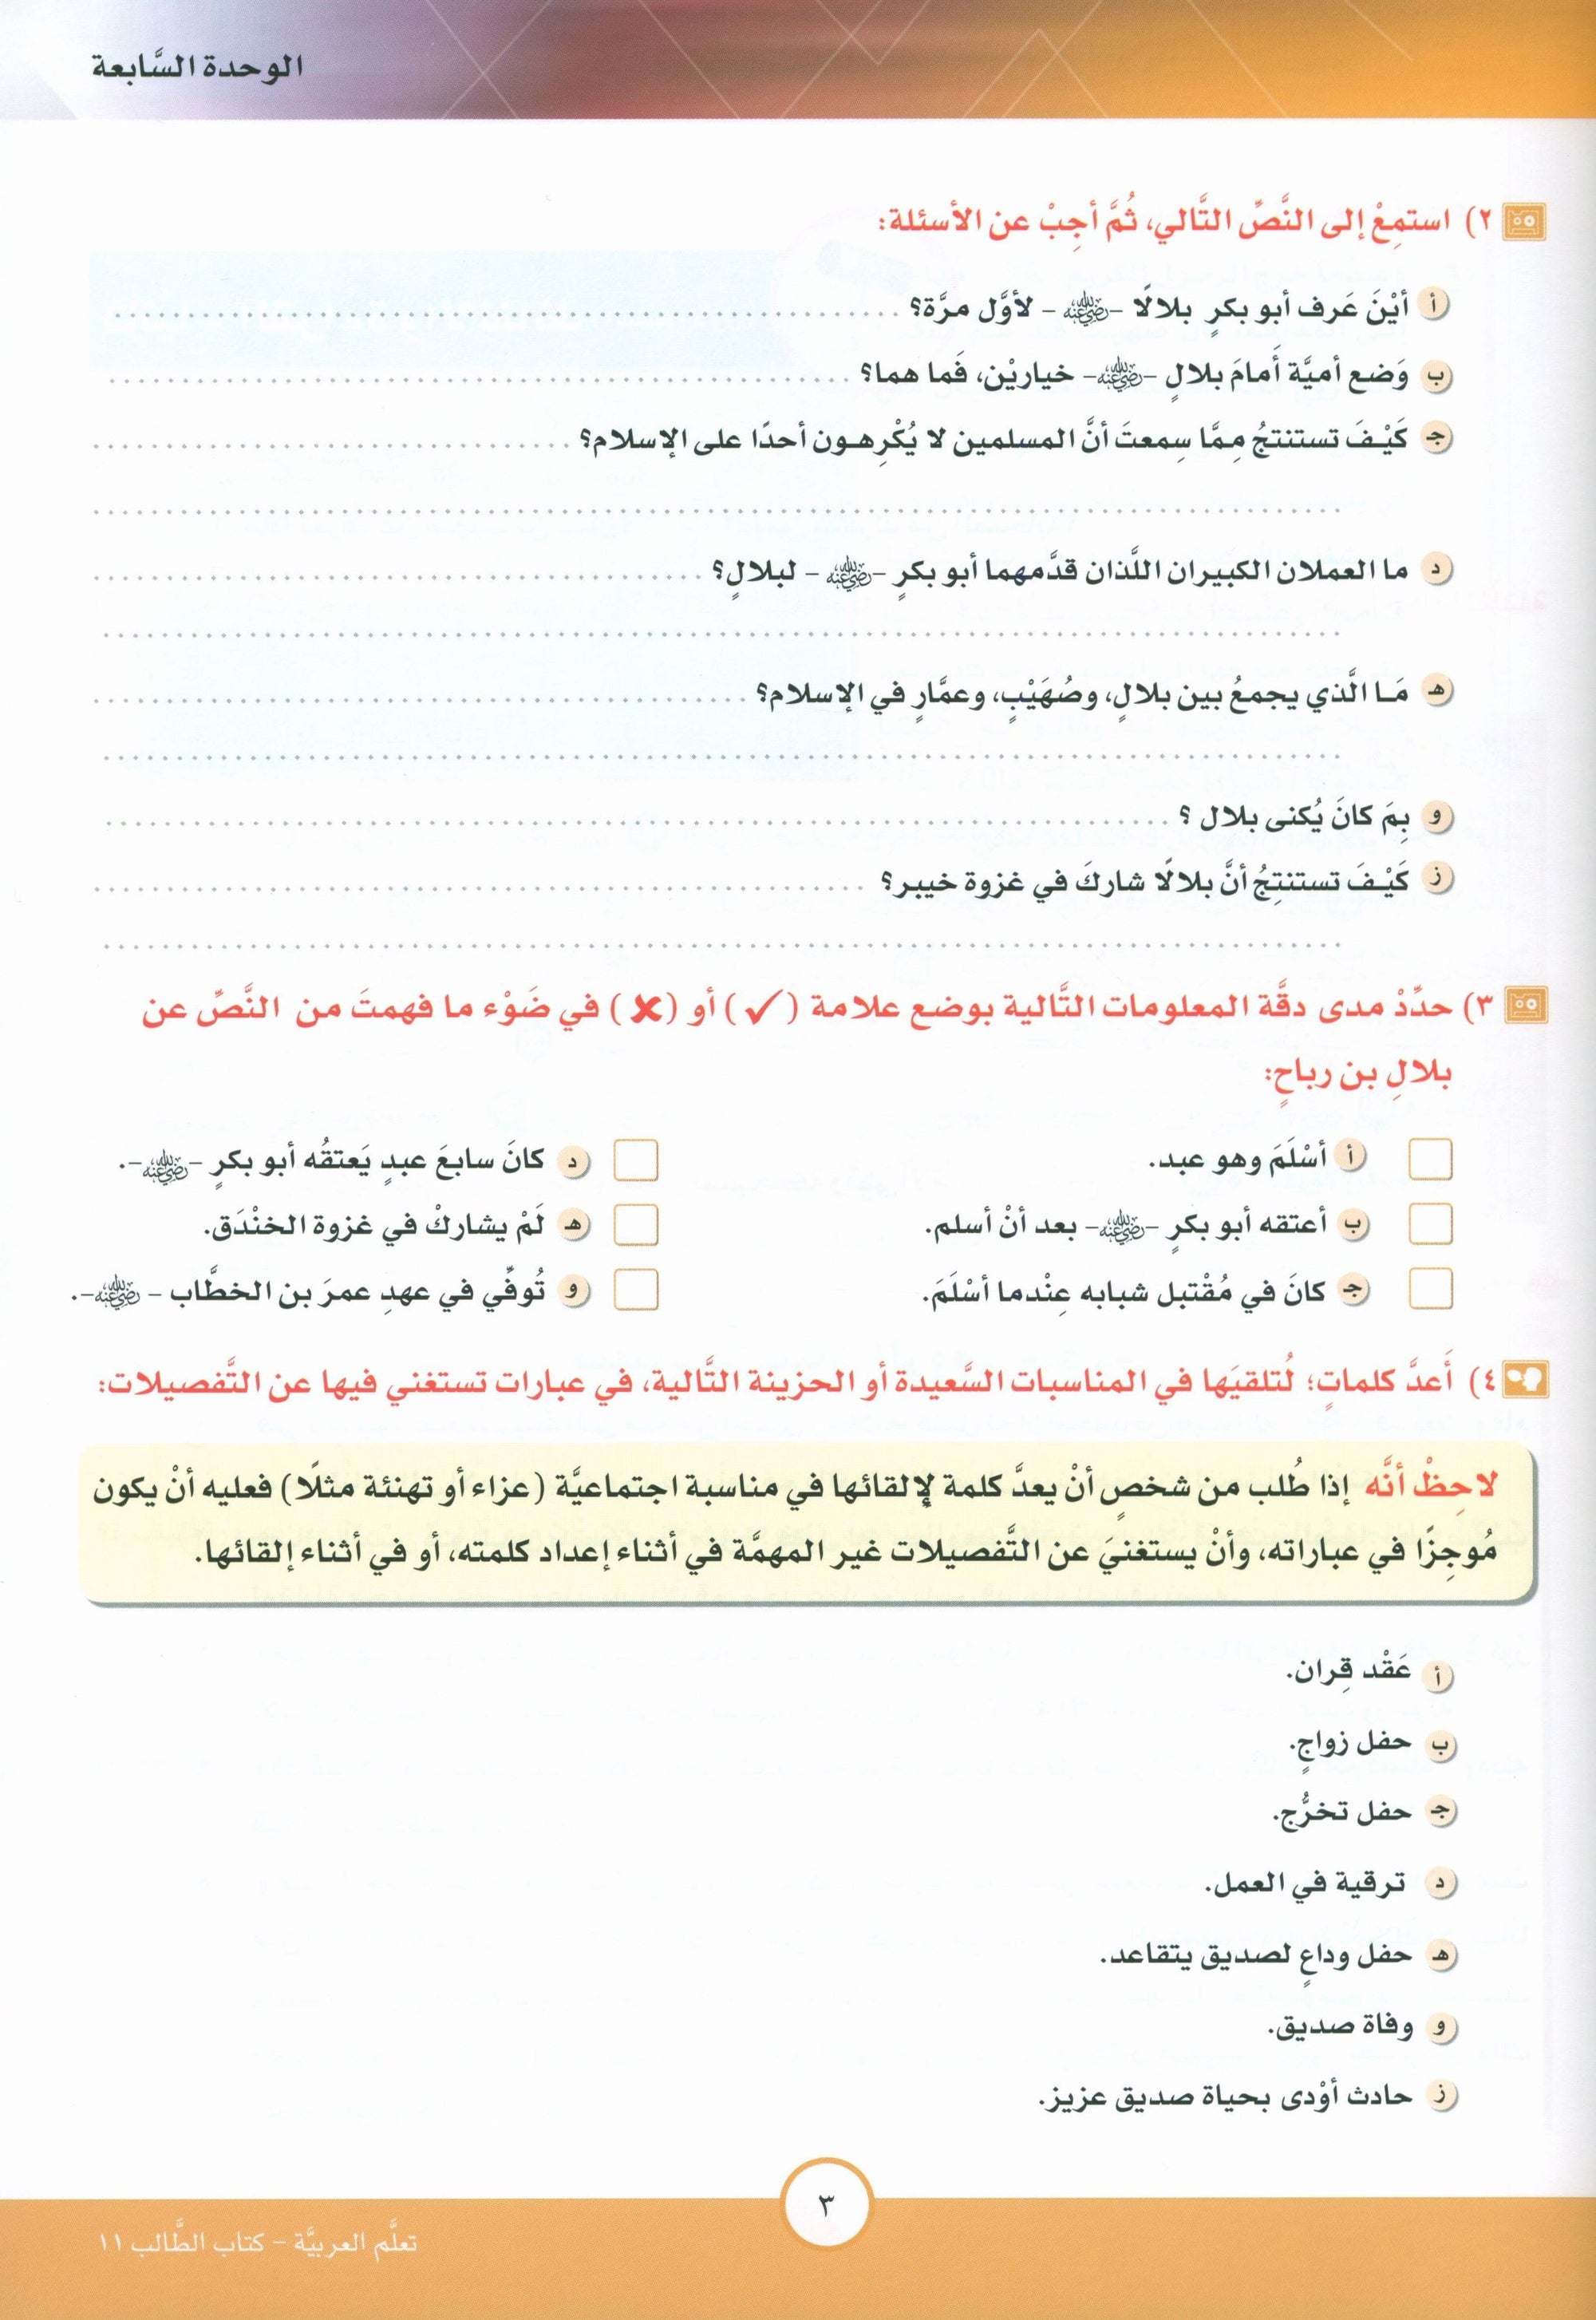 ICO Learn Arabic Textbook Level 11 Part 2 تعلم العربية كتاب التلميذ